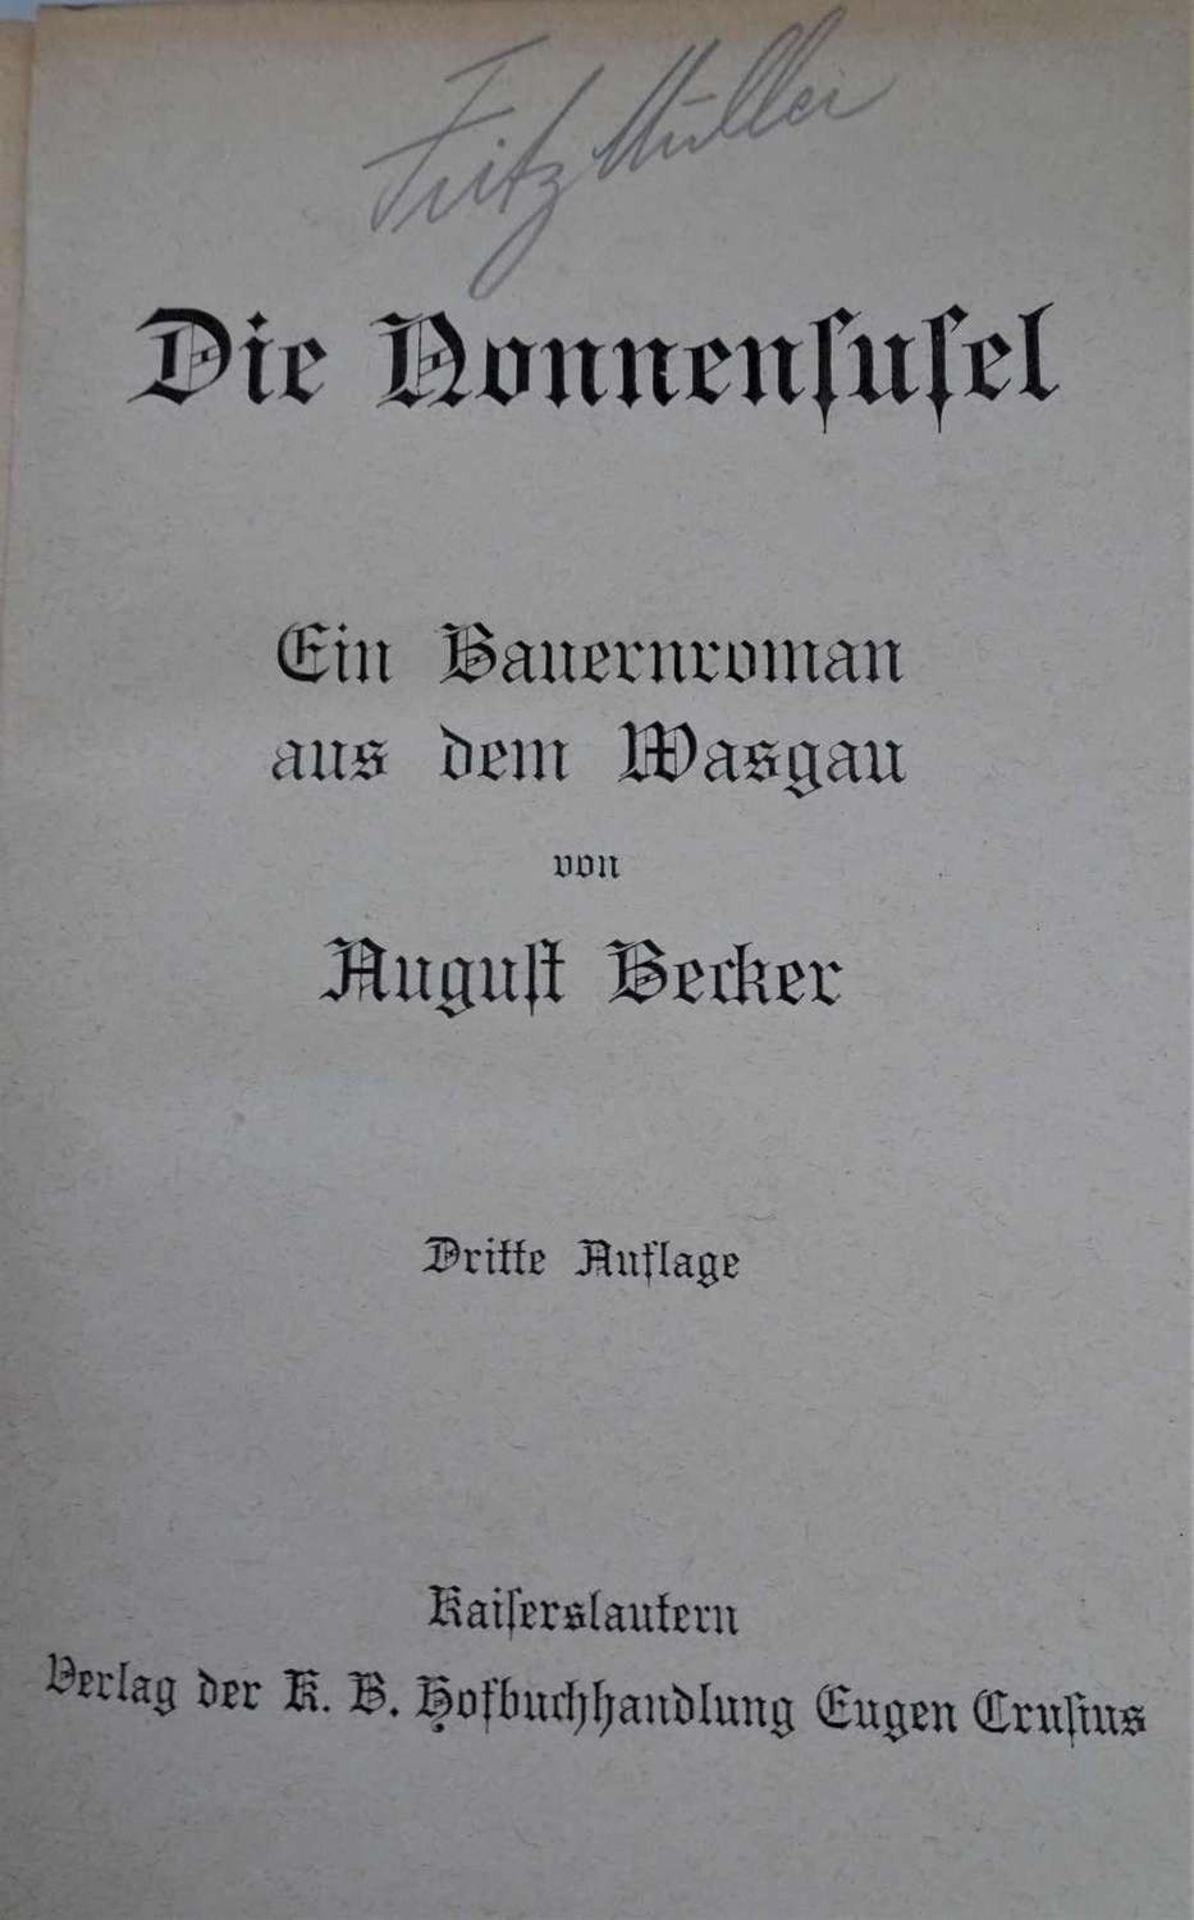 Pfalzliteratur, insgesamt 4 Bücher, dabei die Nonnentafel "Hedwig" beide von August Becker, Der - Bild 2 aus 2